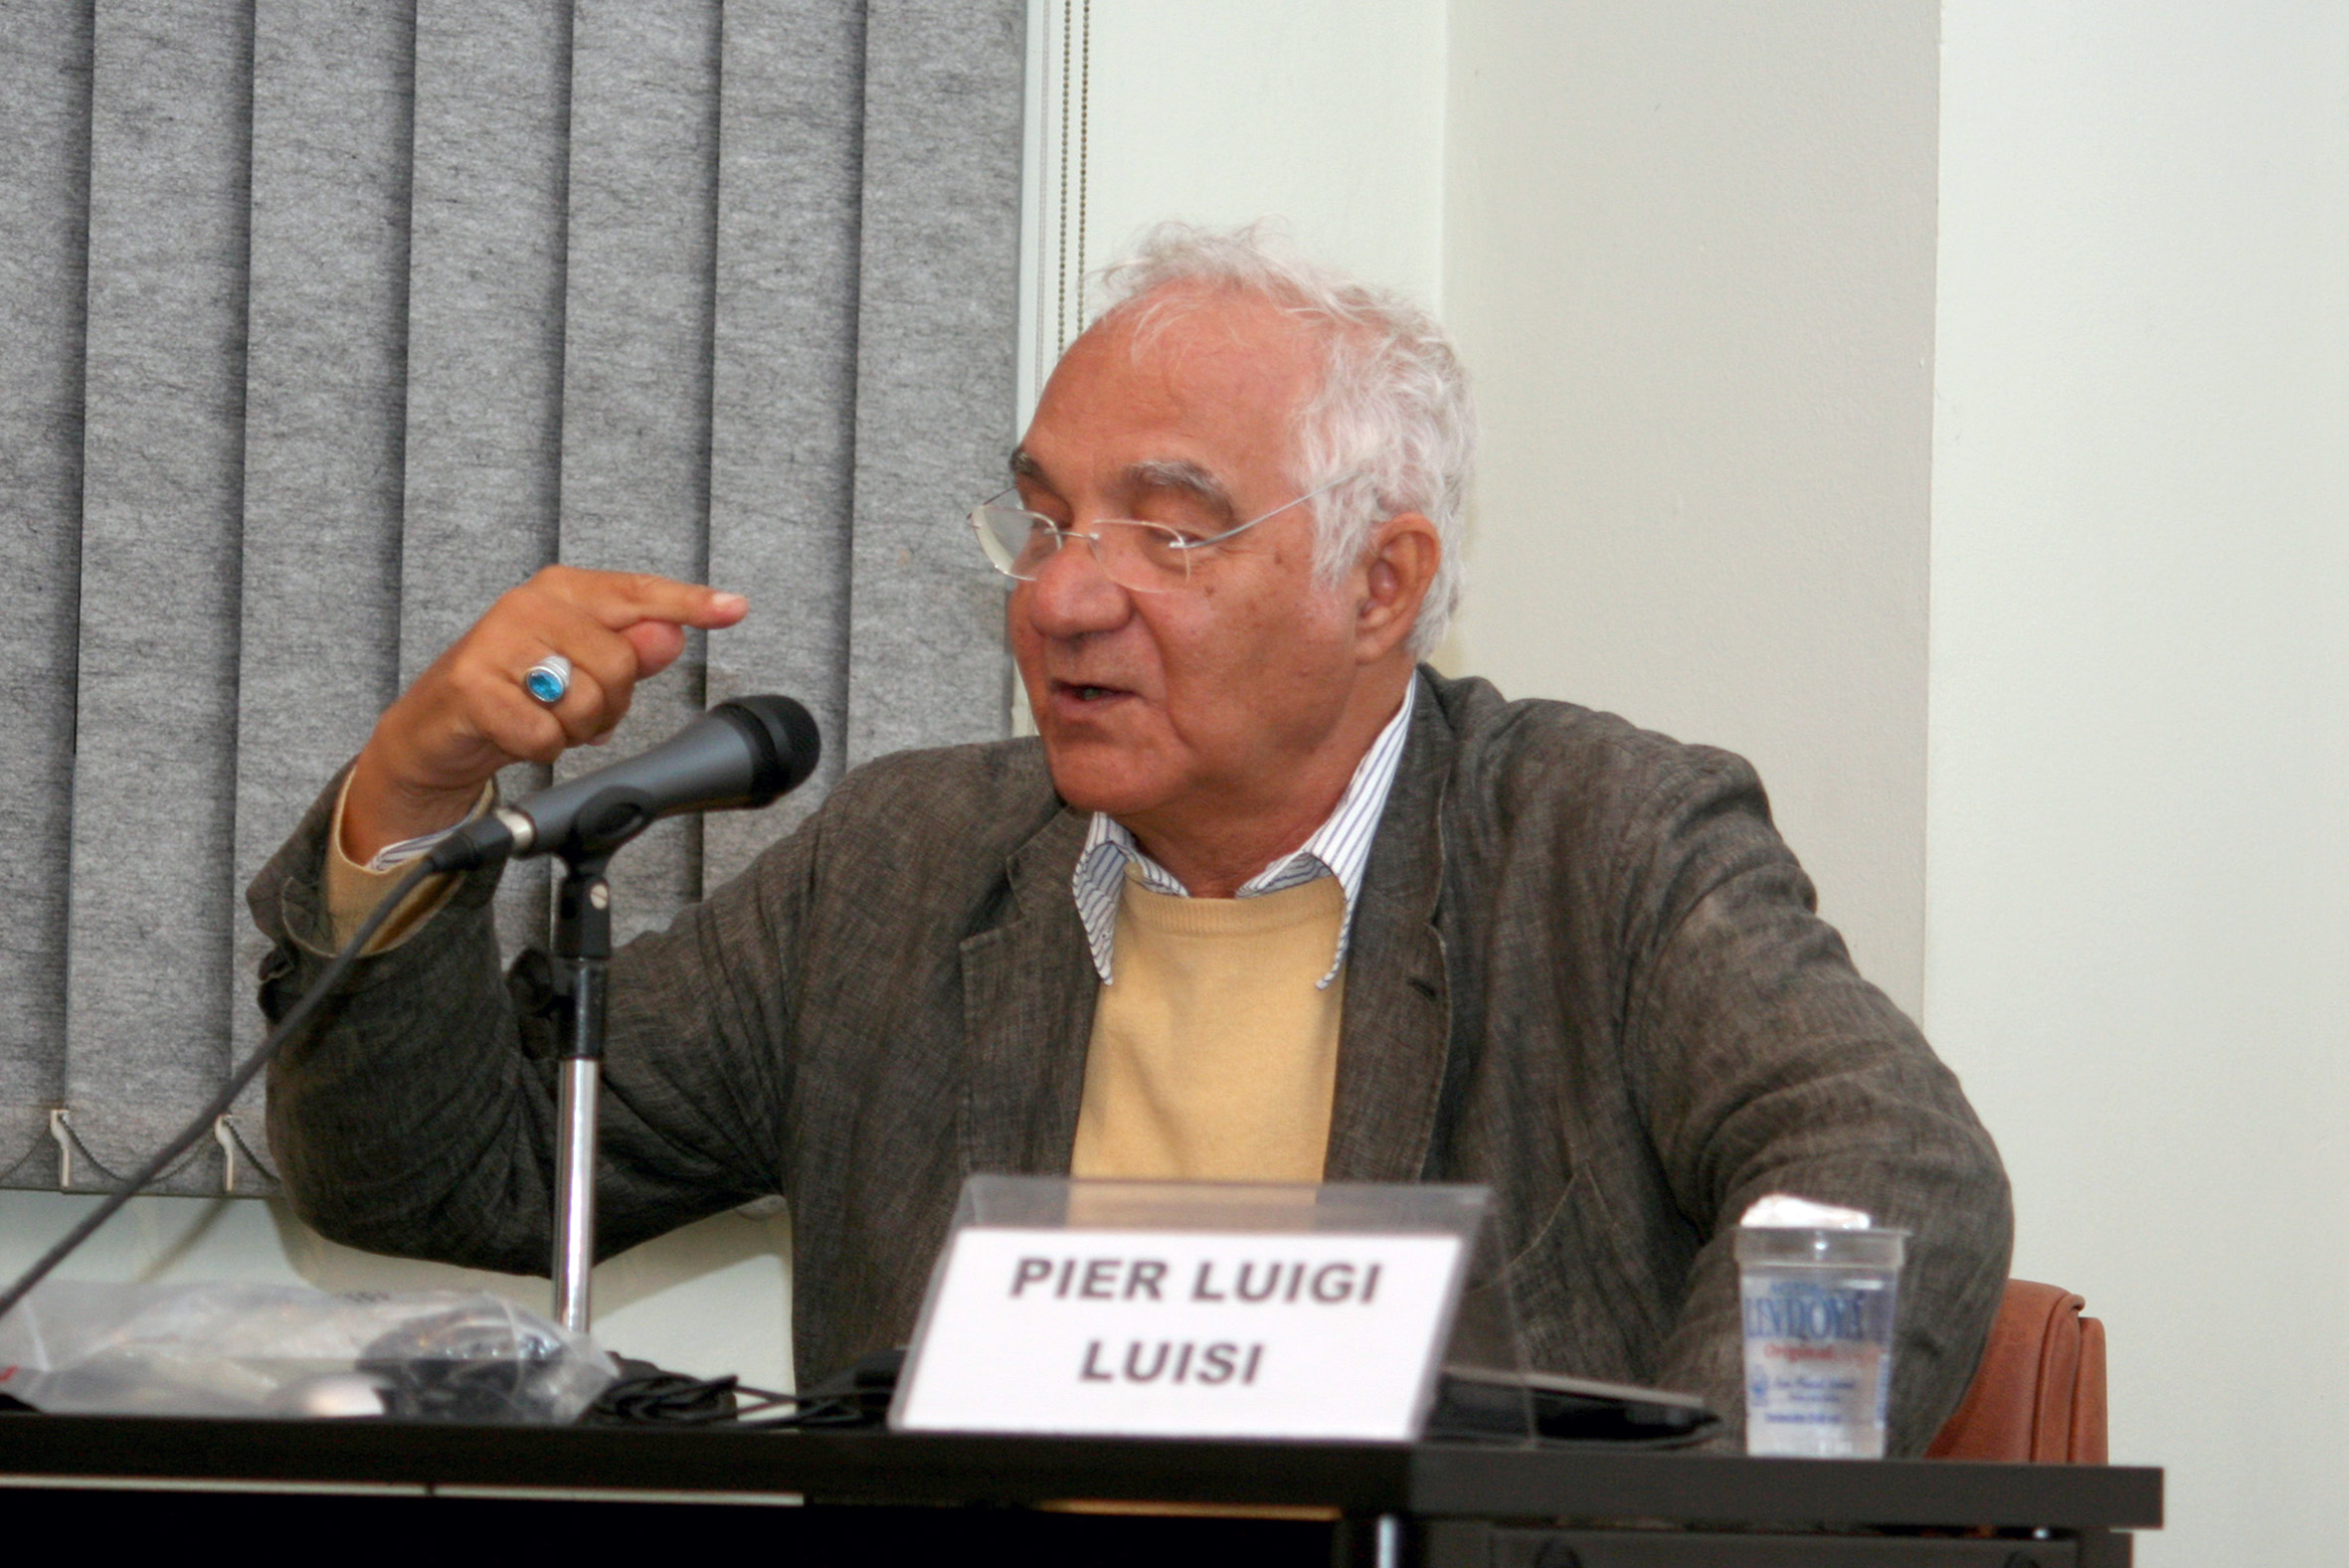 Pier Luigi Luisi